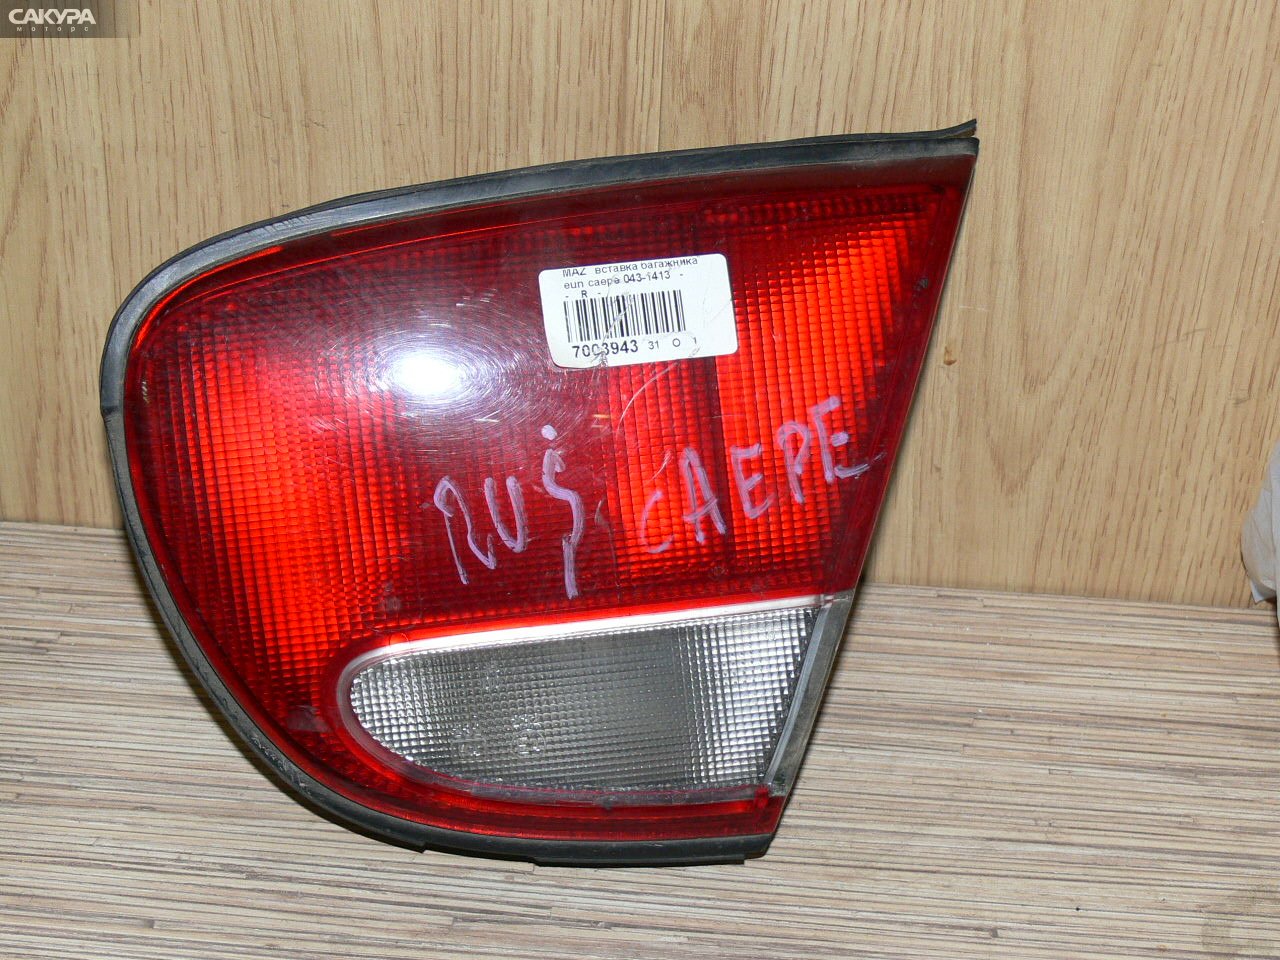 Фонарь вставка багажника правый Mazda Eunos 500 CAEPE 043-1413: купить в Сакура Иркутск.